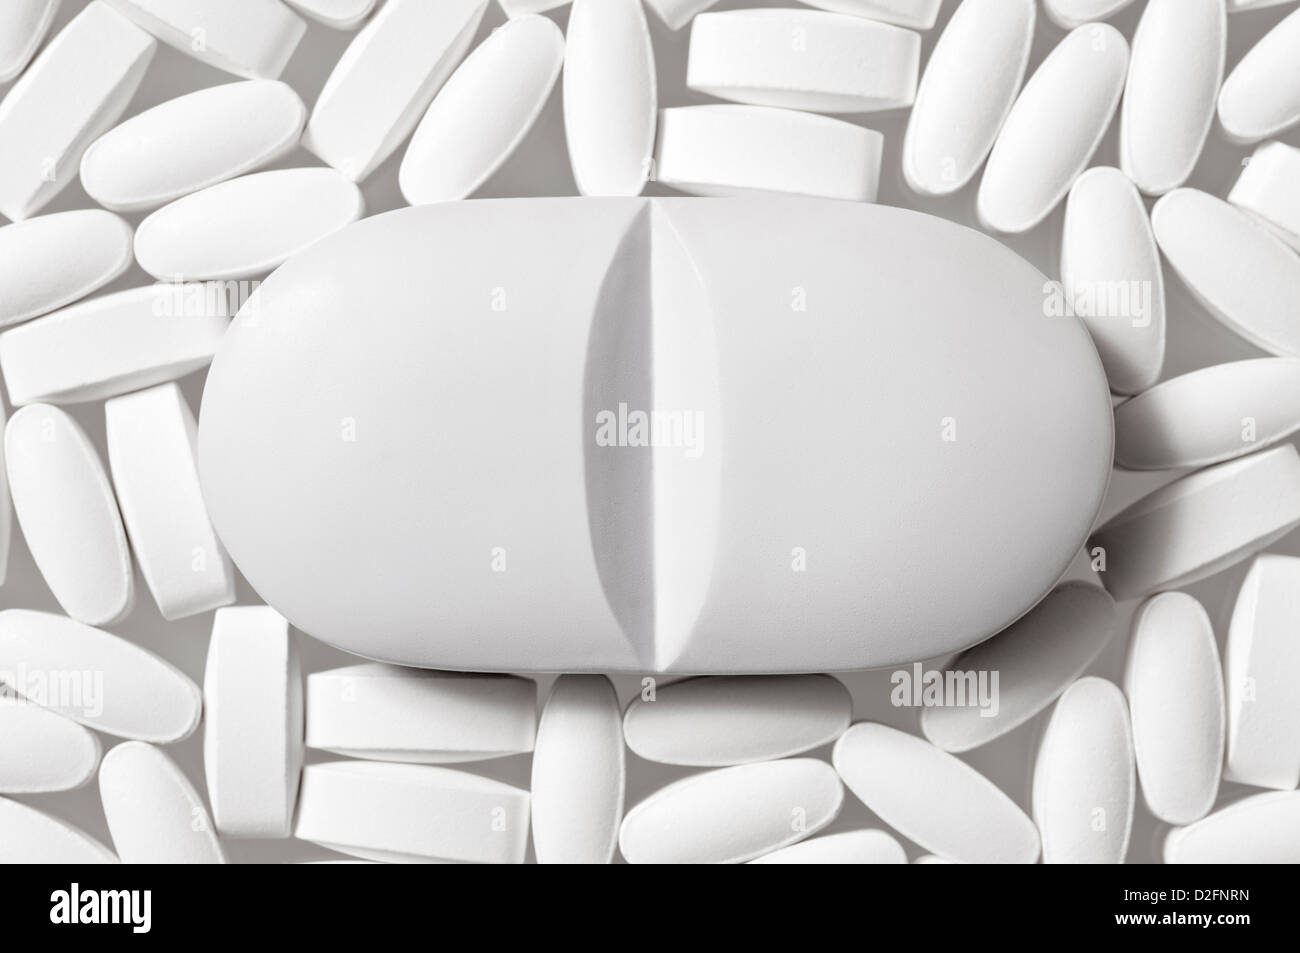 Pillole - generico bianco a forma di losanga pillole in bianco su sfondo bianco con una pillola di grandi dimensioni nel centro Foto Stock